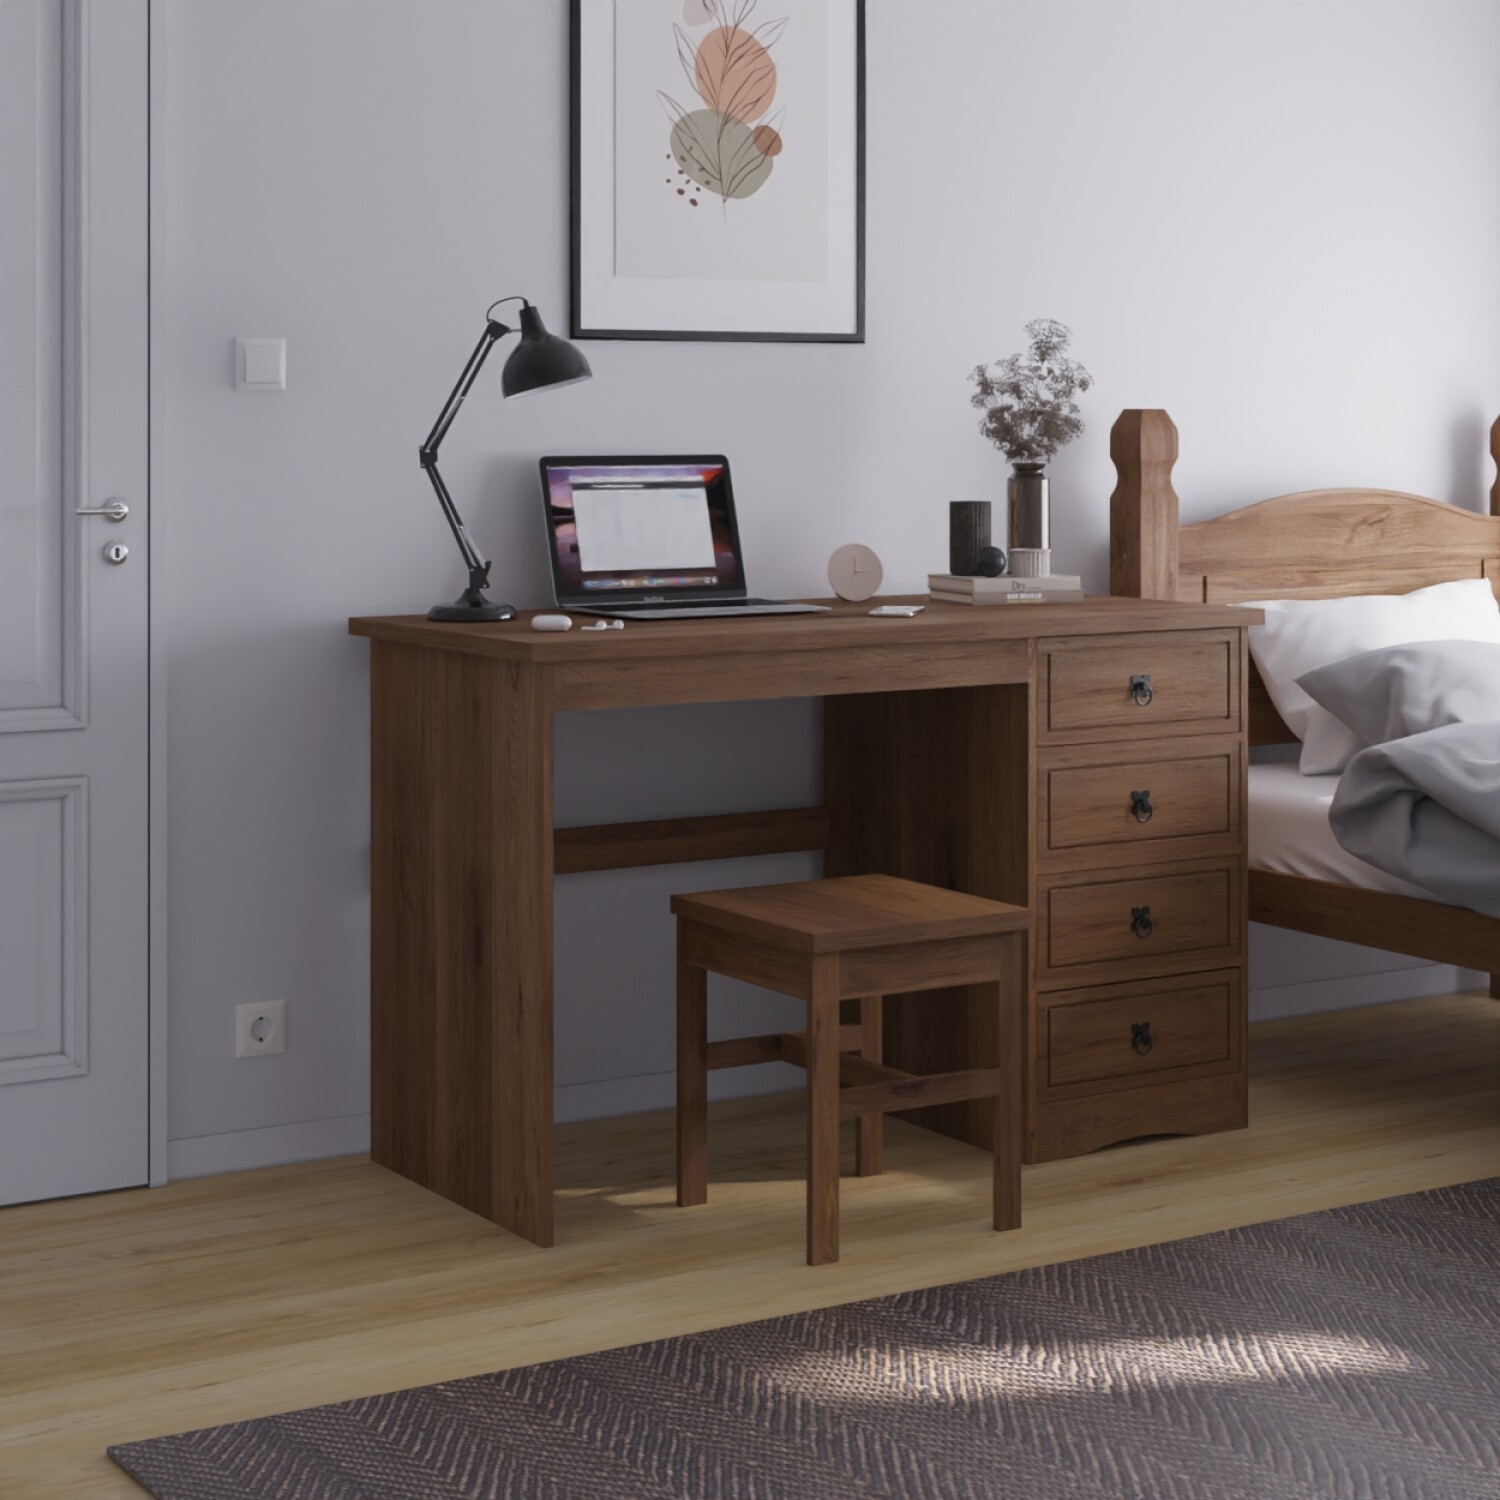 Cómoda para dormitorio, despacho, 4 cajones diseño blanco madera